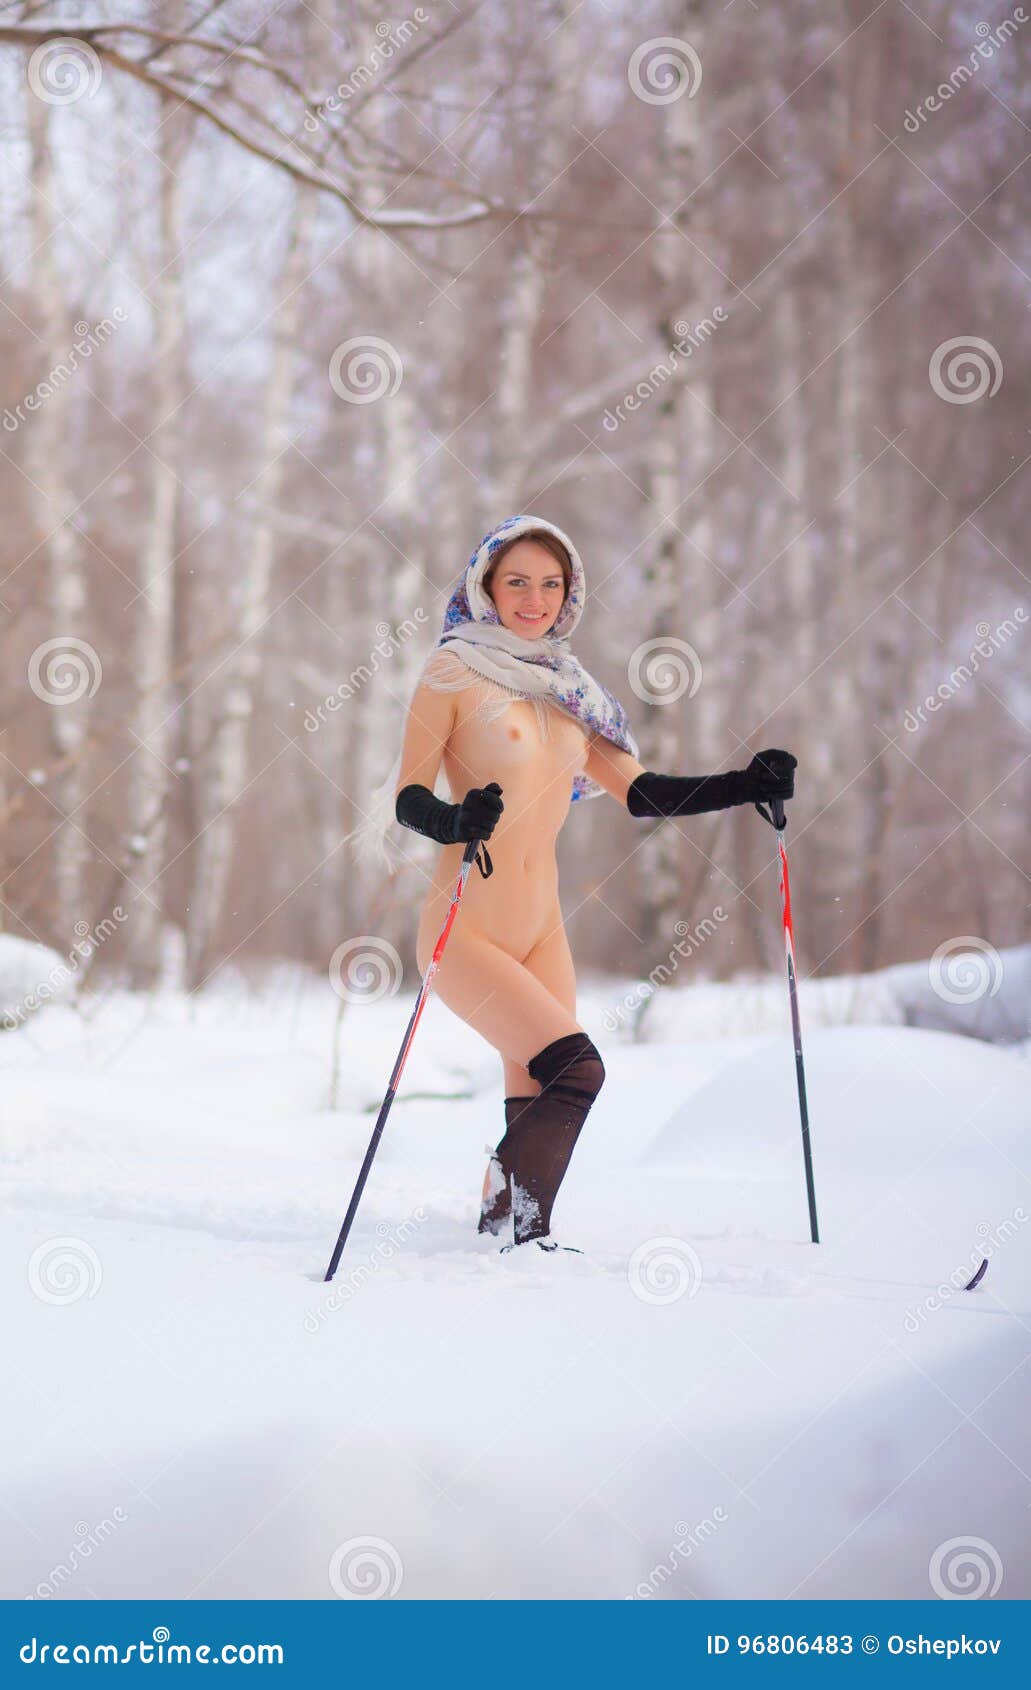 Women skiing naked